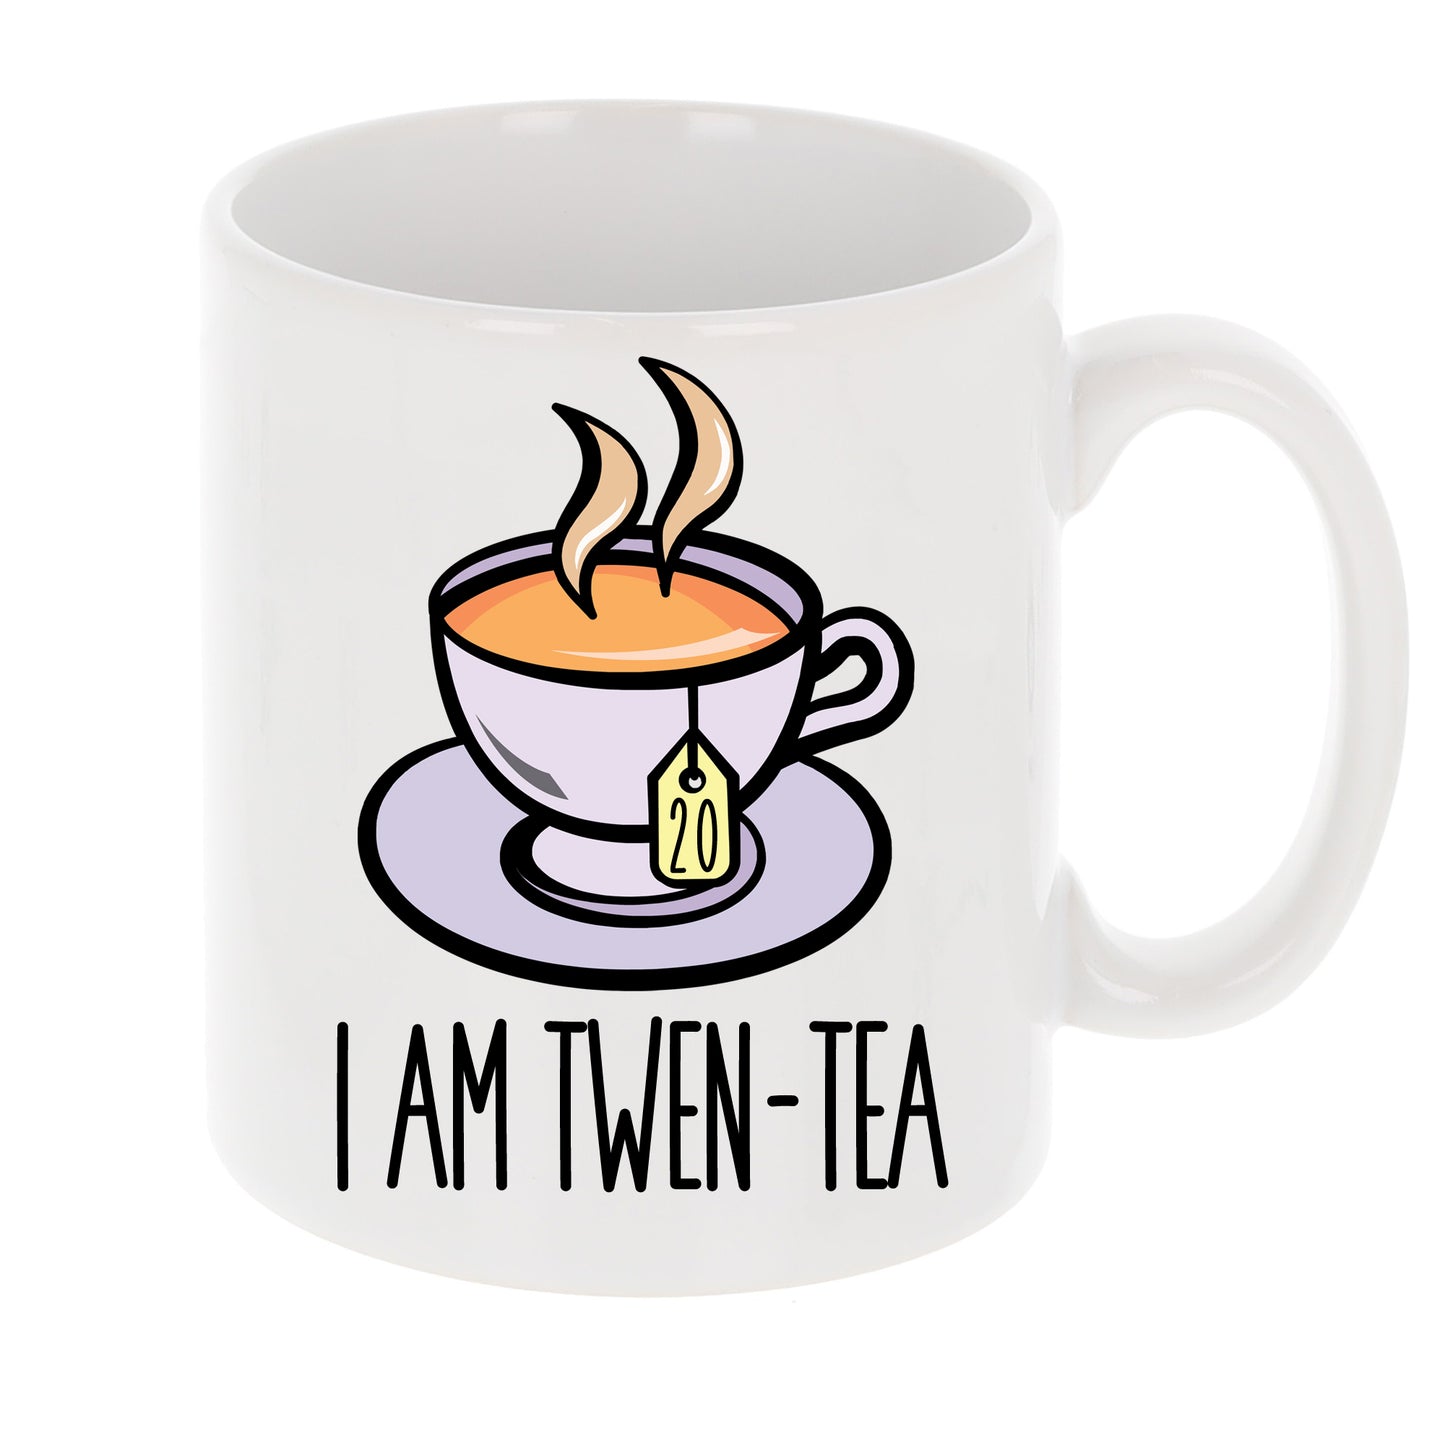 I Am Twen-Tea Funny 20th Birthday Mug Gift for Tea Lovers  - Always Looking Good - Mug Only  